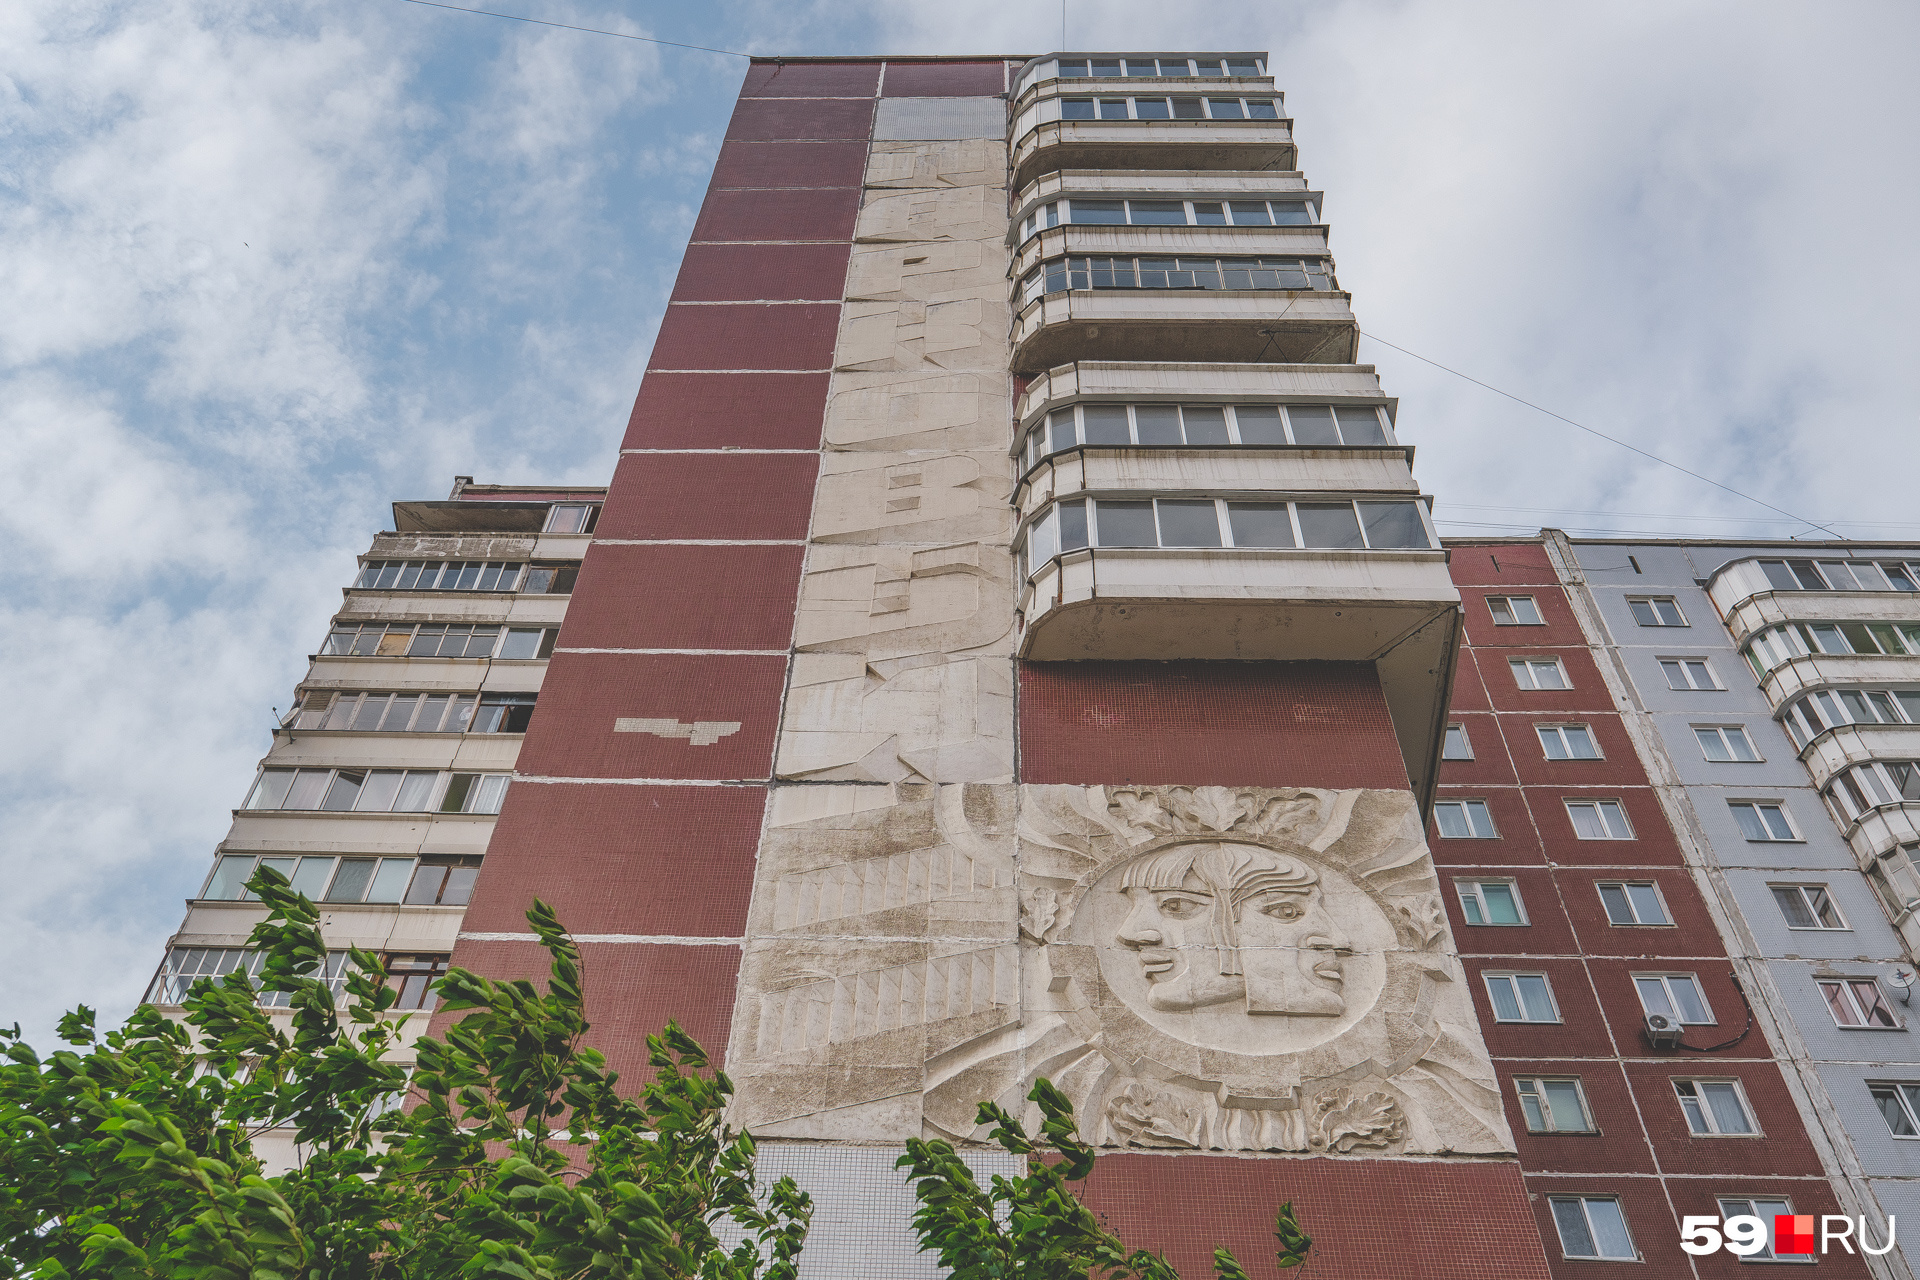 Рельефы на фасадах домов на Парковом и в Закамске сделаны во время отливки стен на заводе